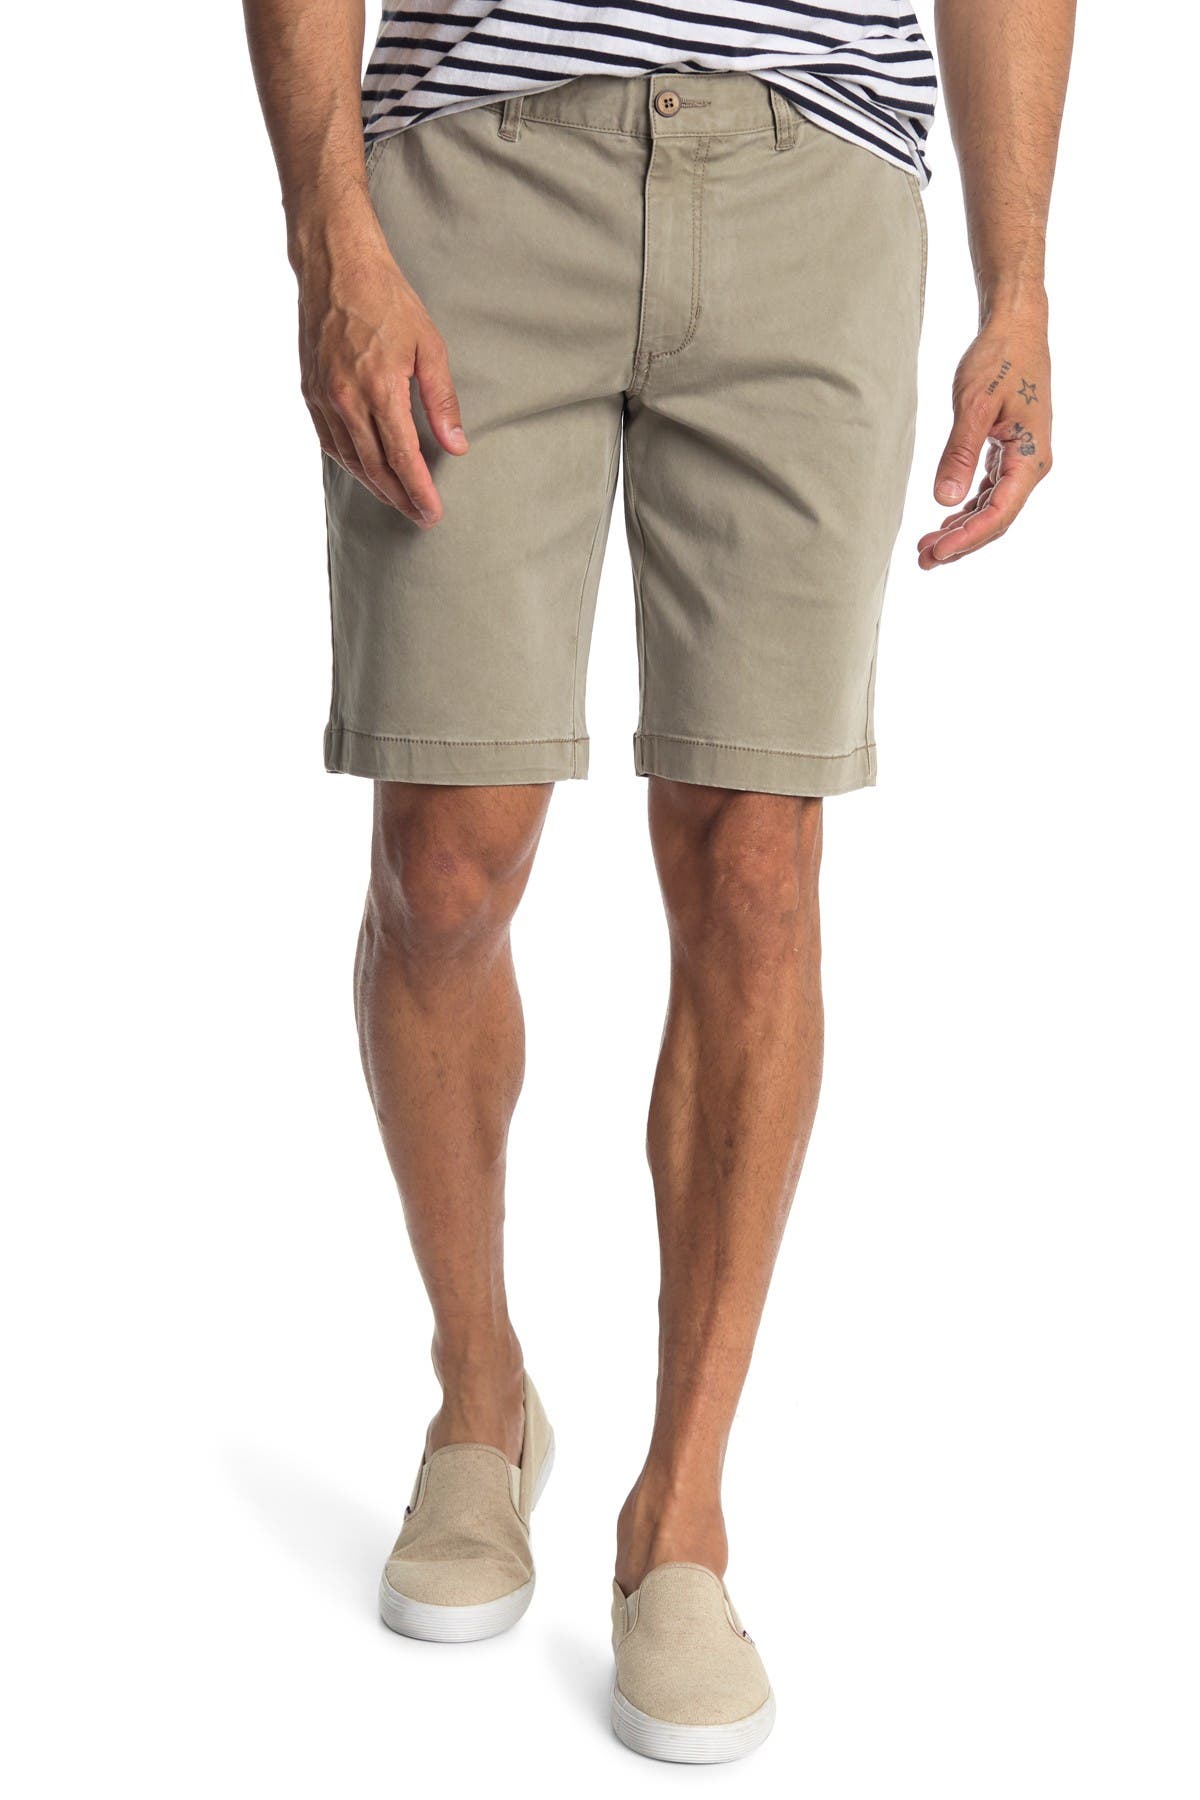 tommy bahama boracay shorts